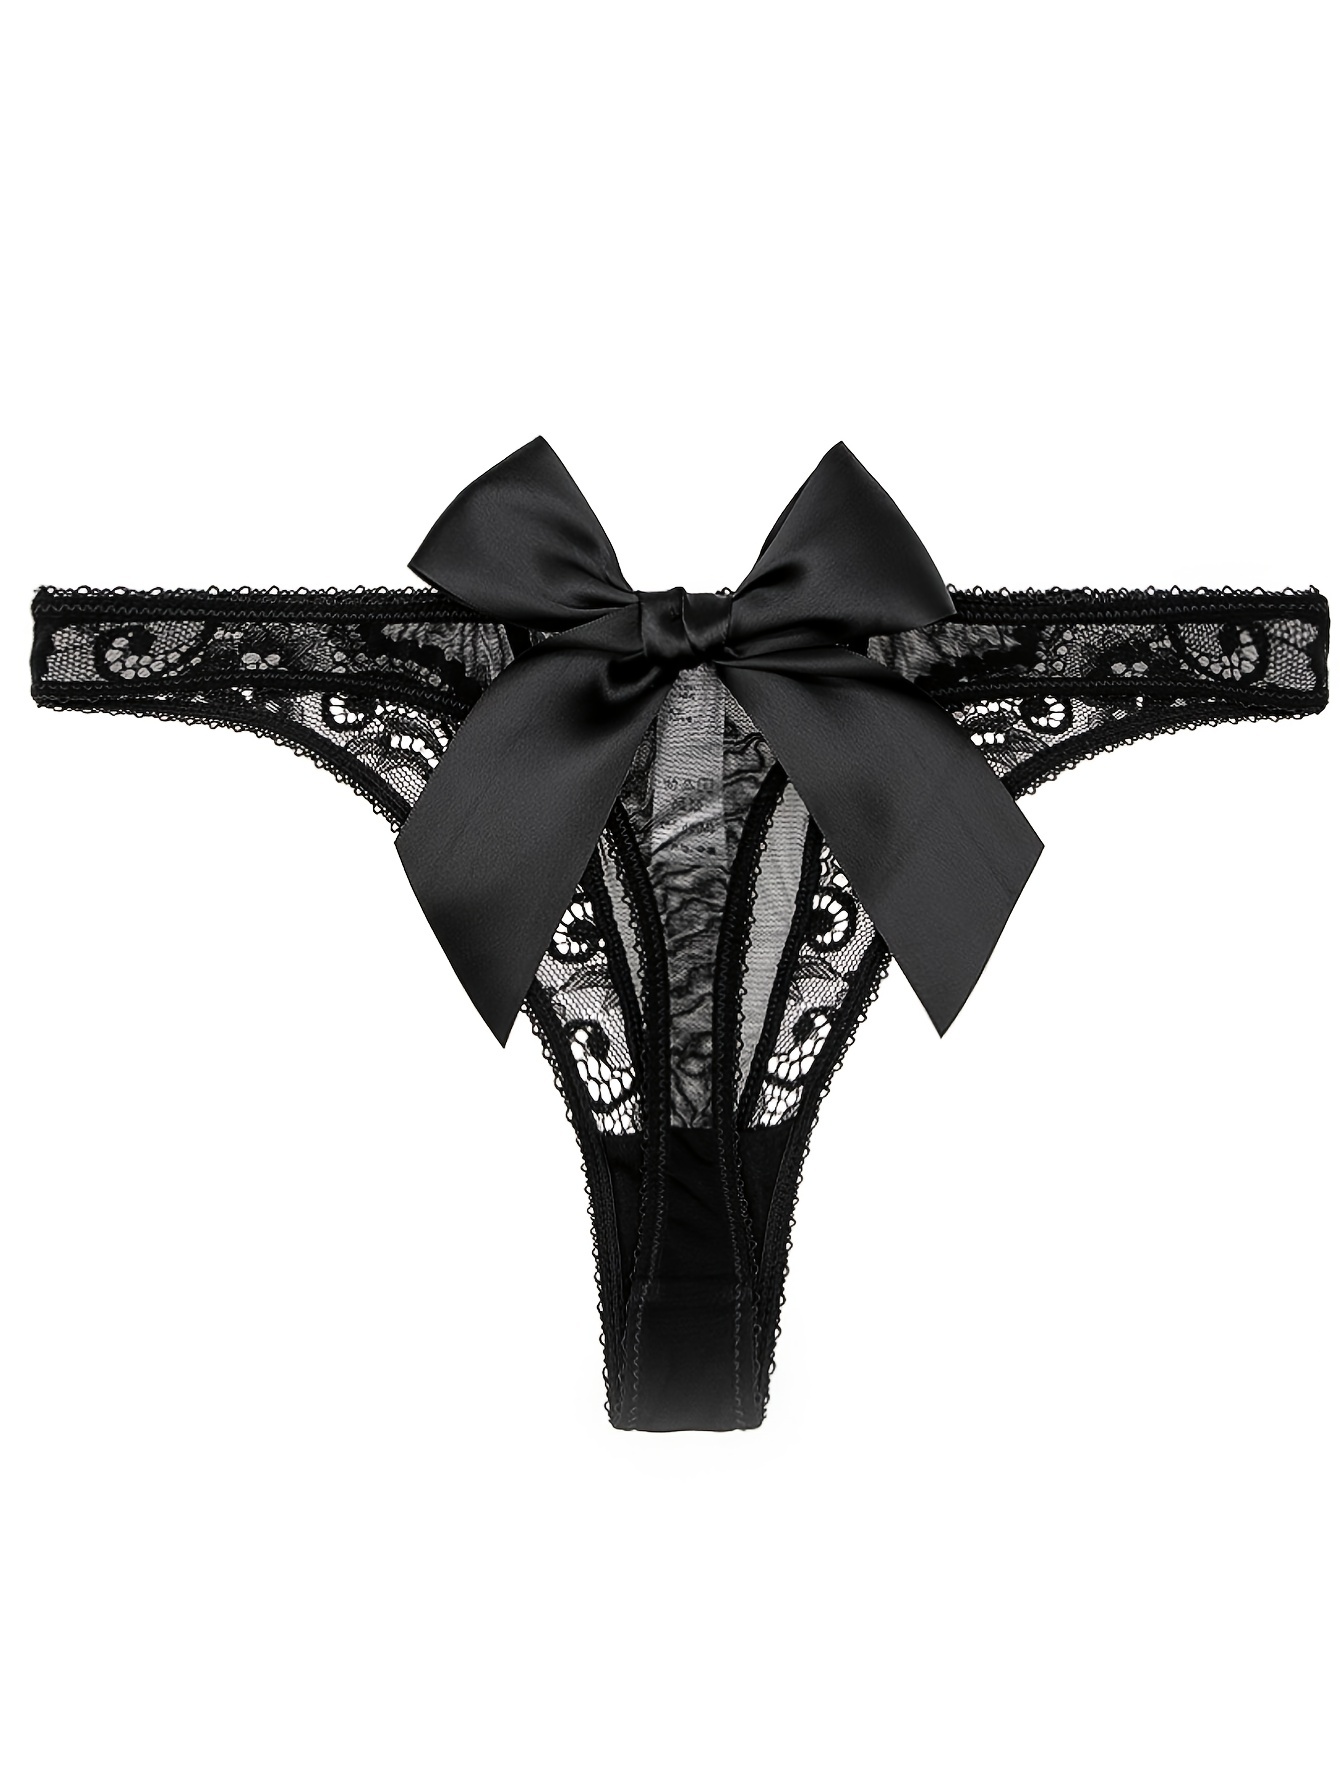 Peek & Beau floral mesh lingerie thong in black